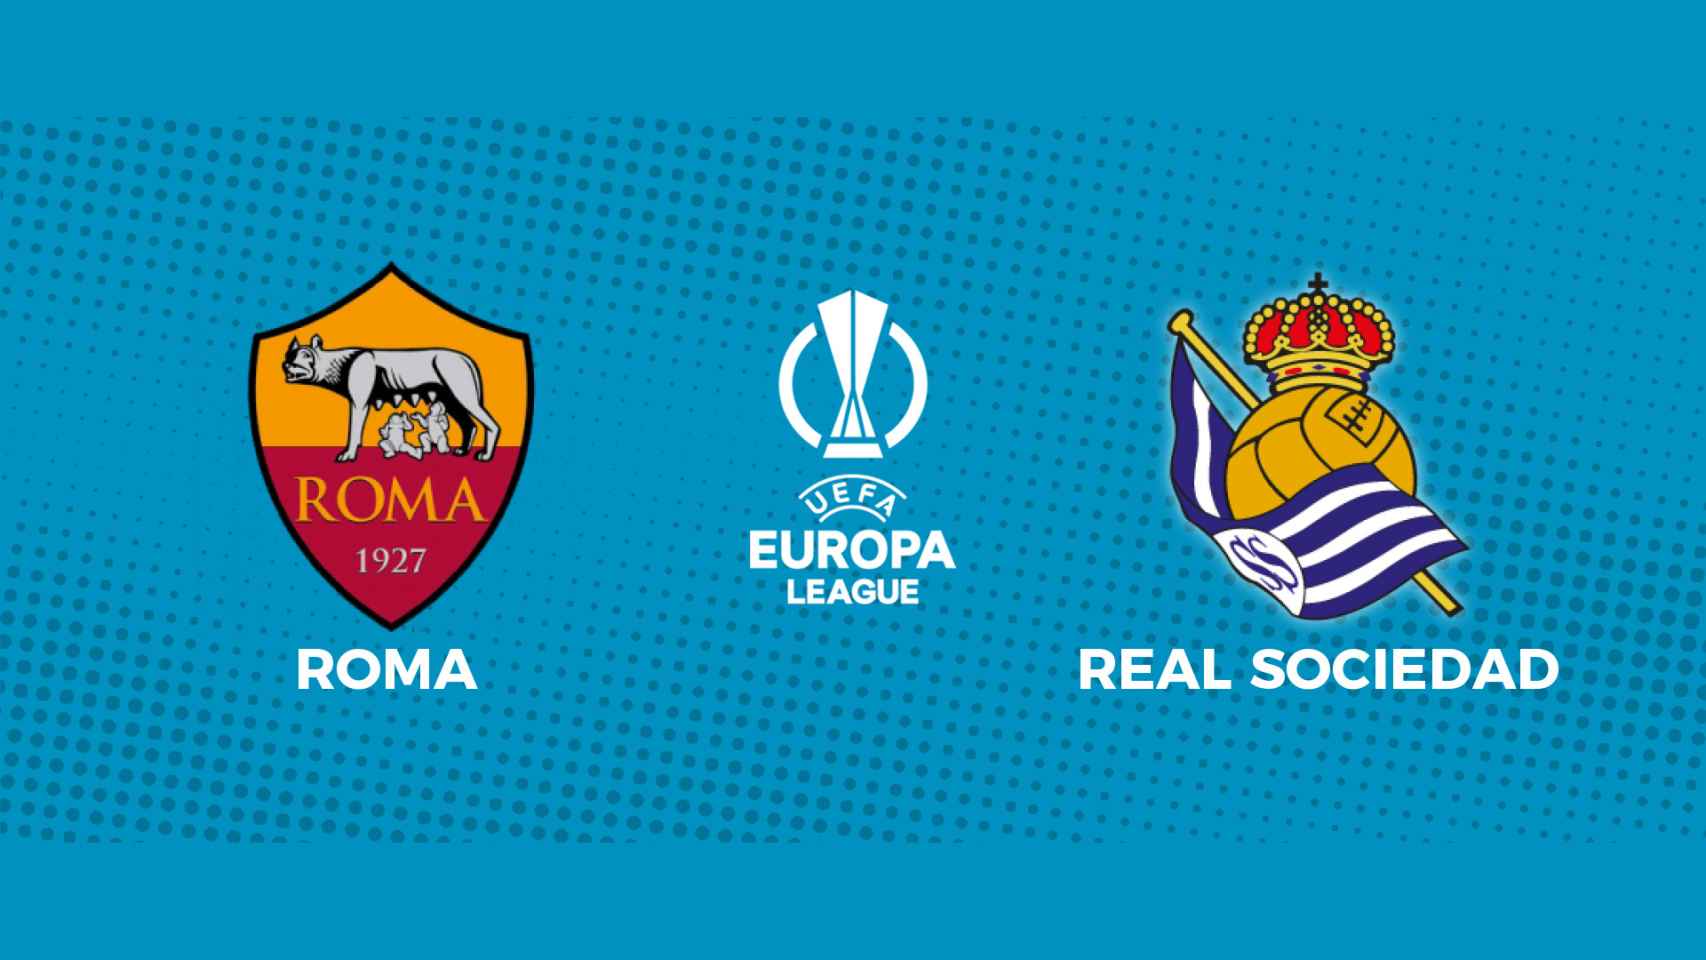 Roma - Real Sociedad, la Europa League en directo